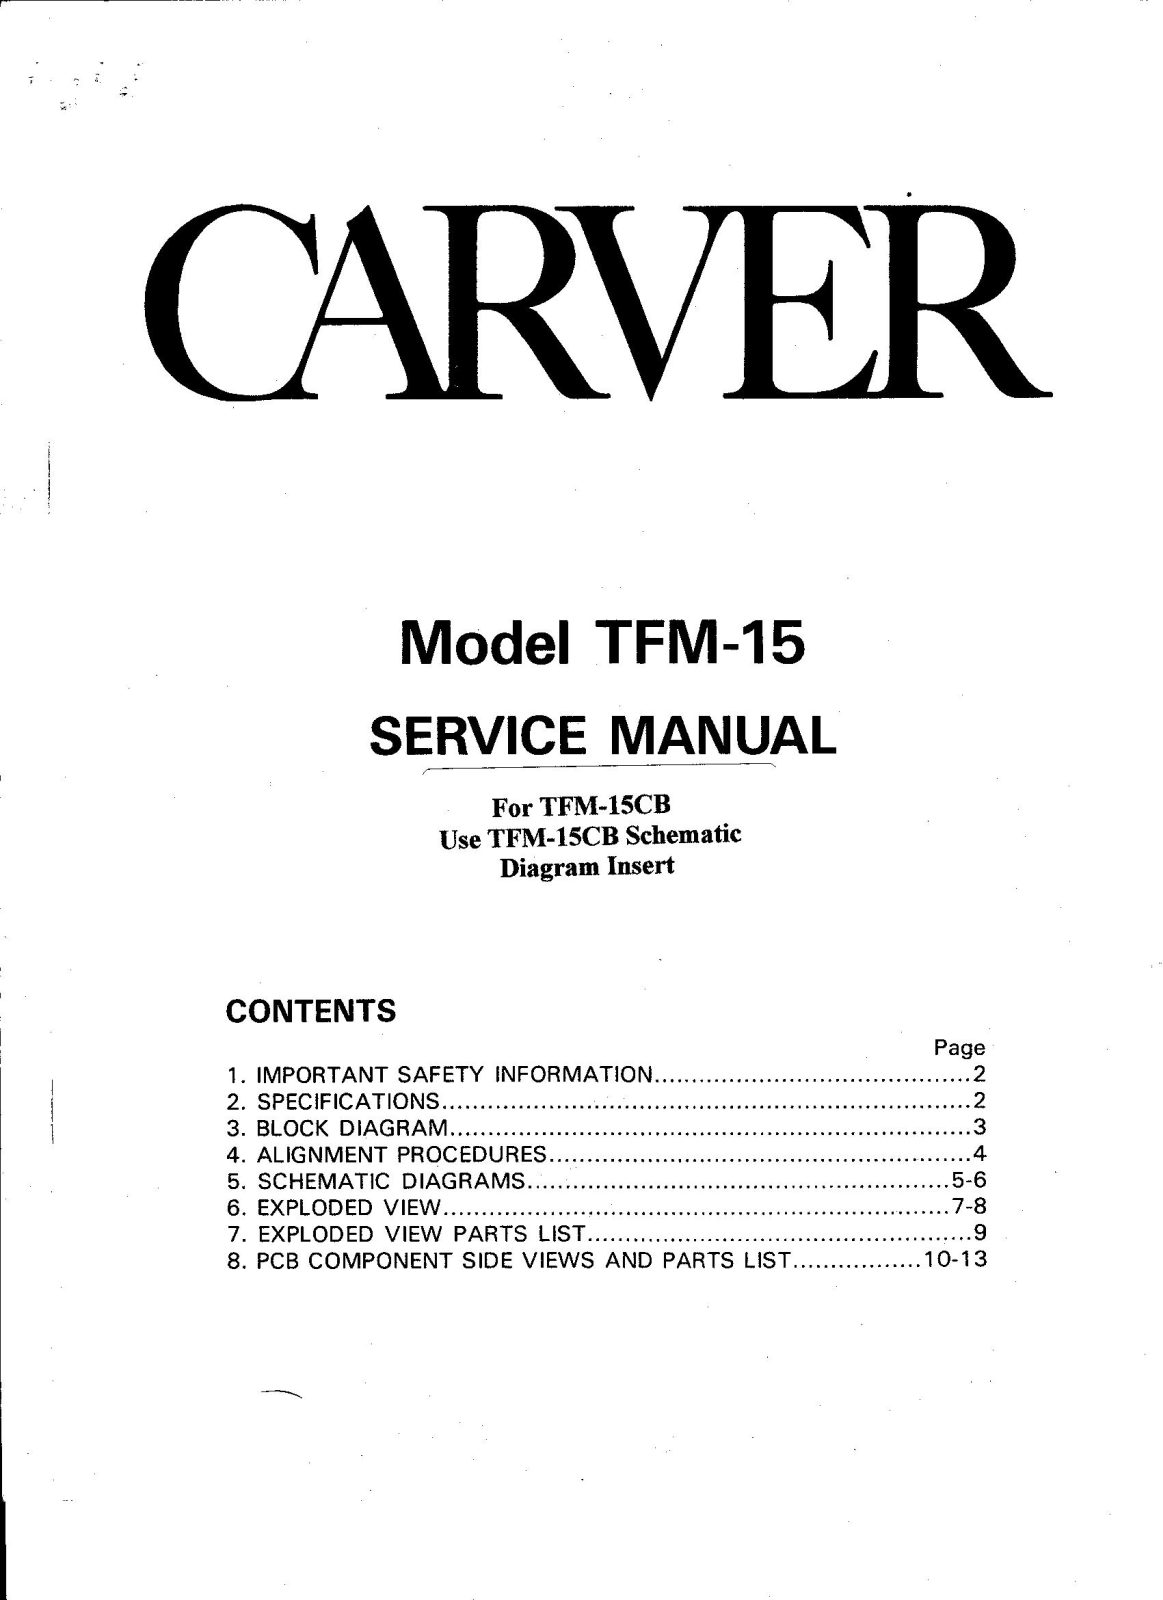 Carver TFM-15-CB Service manual